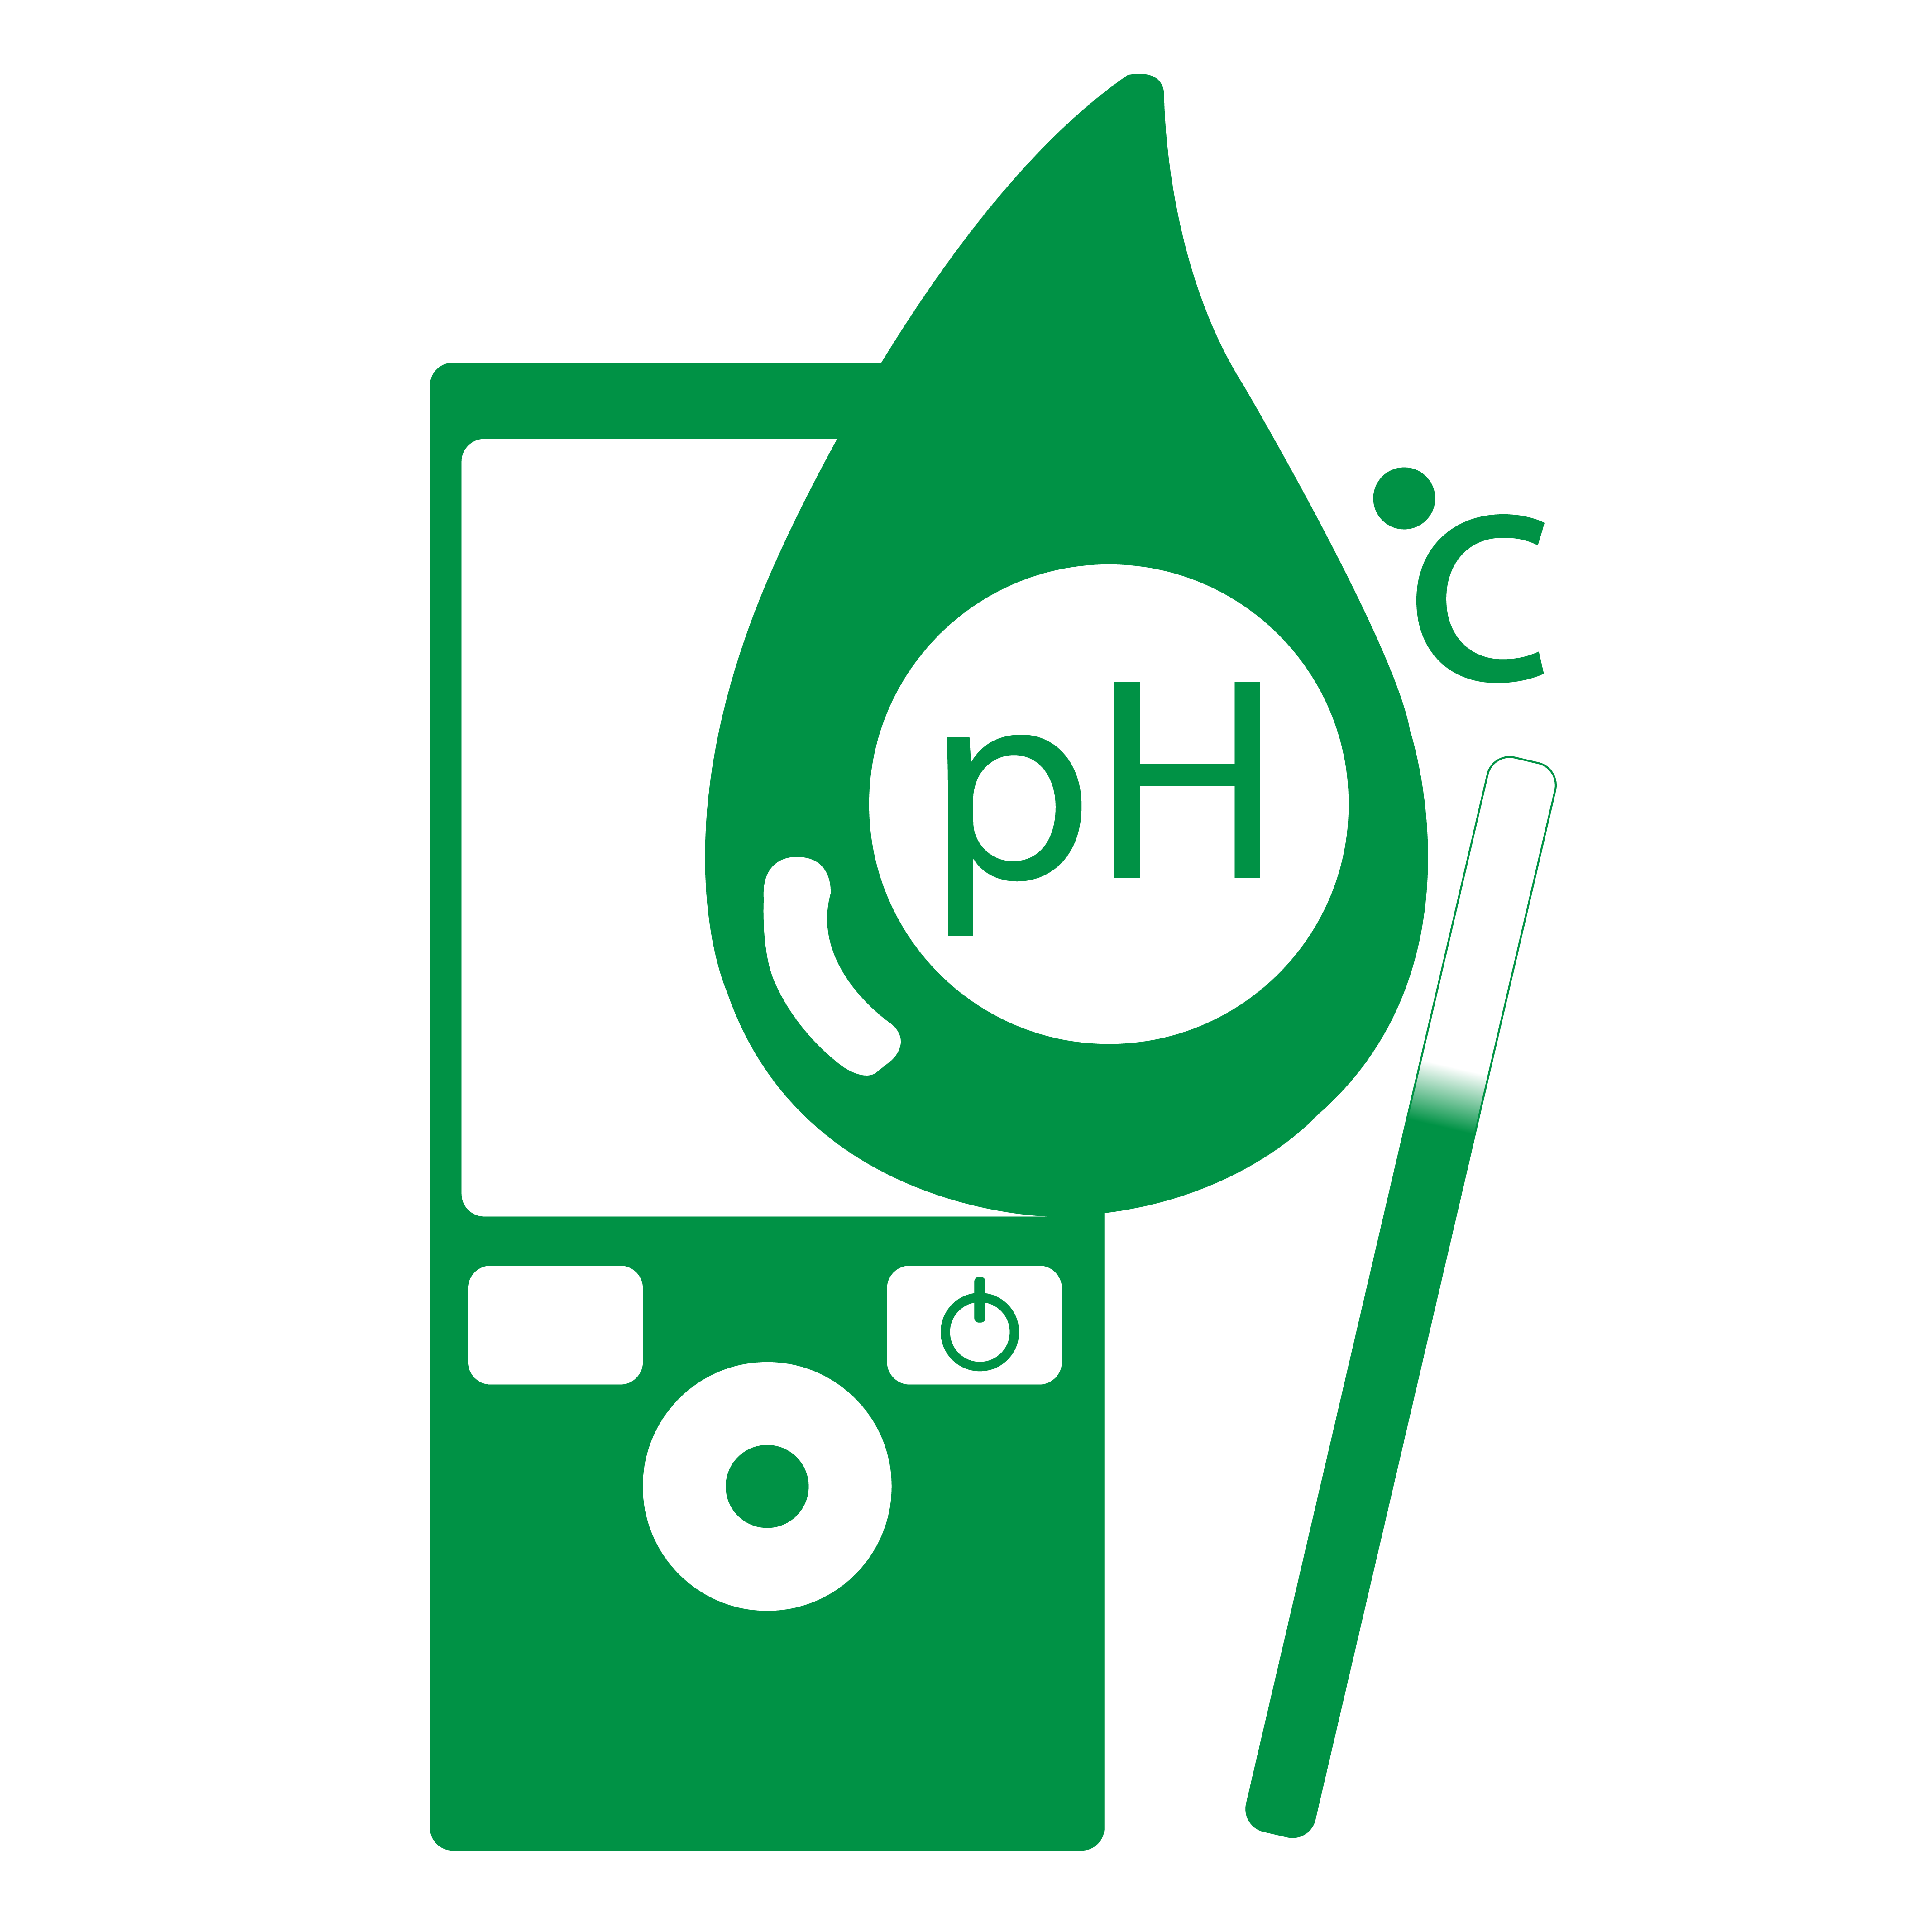 pH & Temperature Meter